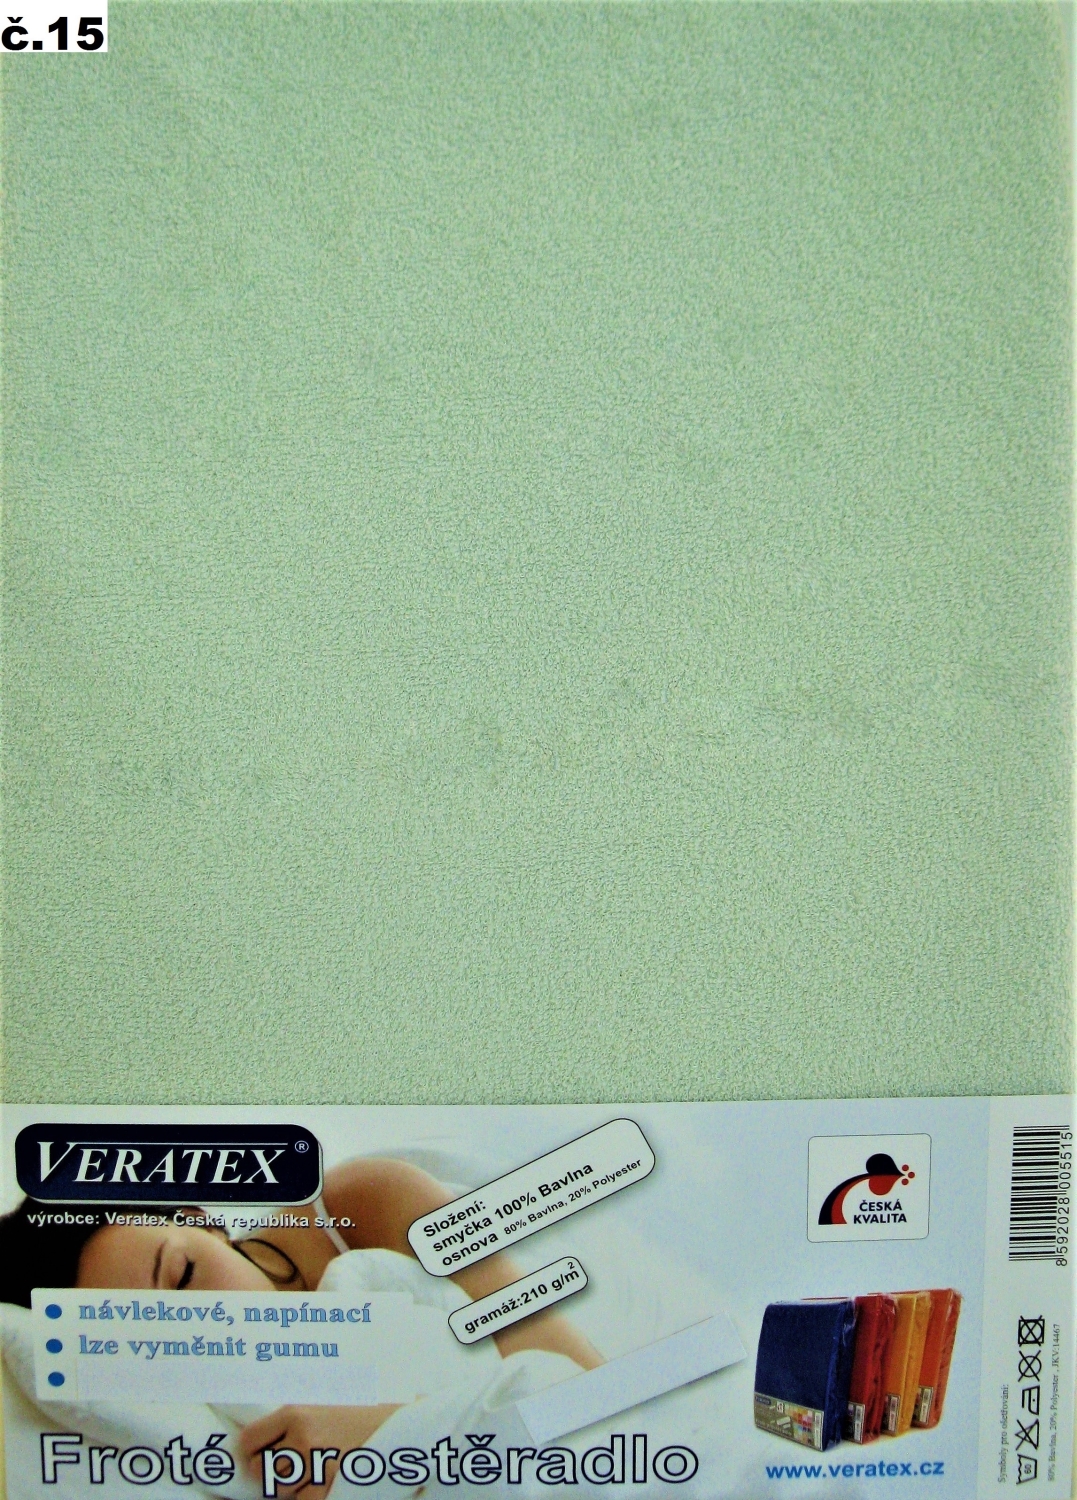 Veratex Froté prostěradlo jednolůžko 100x200/25cm (č.15 sv.zelené)